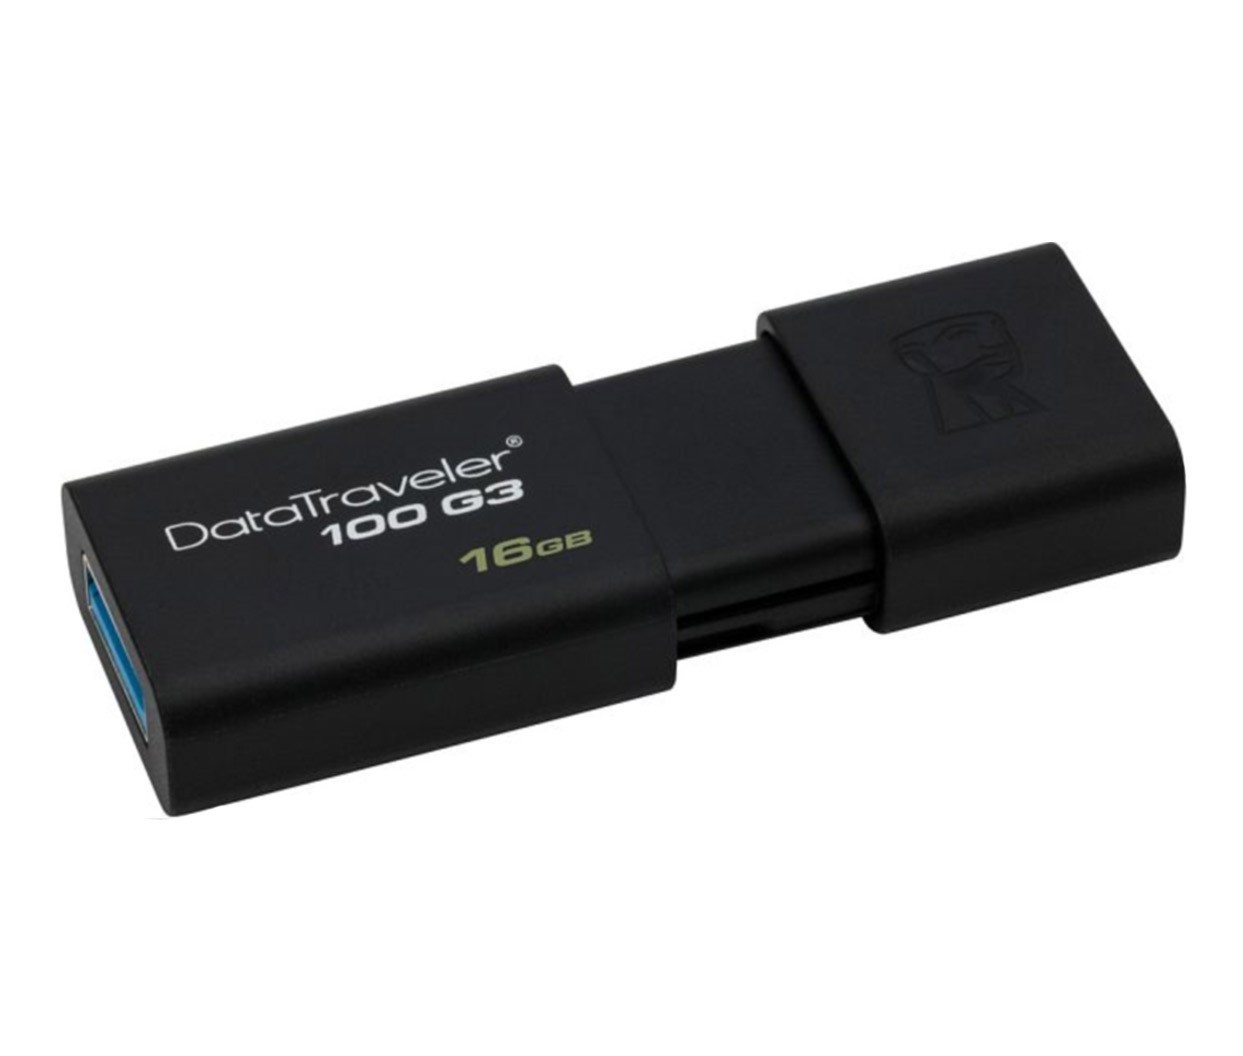 16GB USB 3.0 ključek Kingston